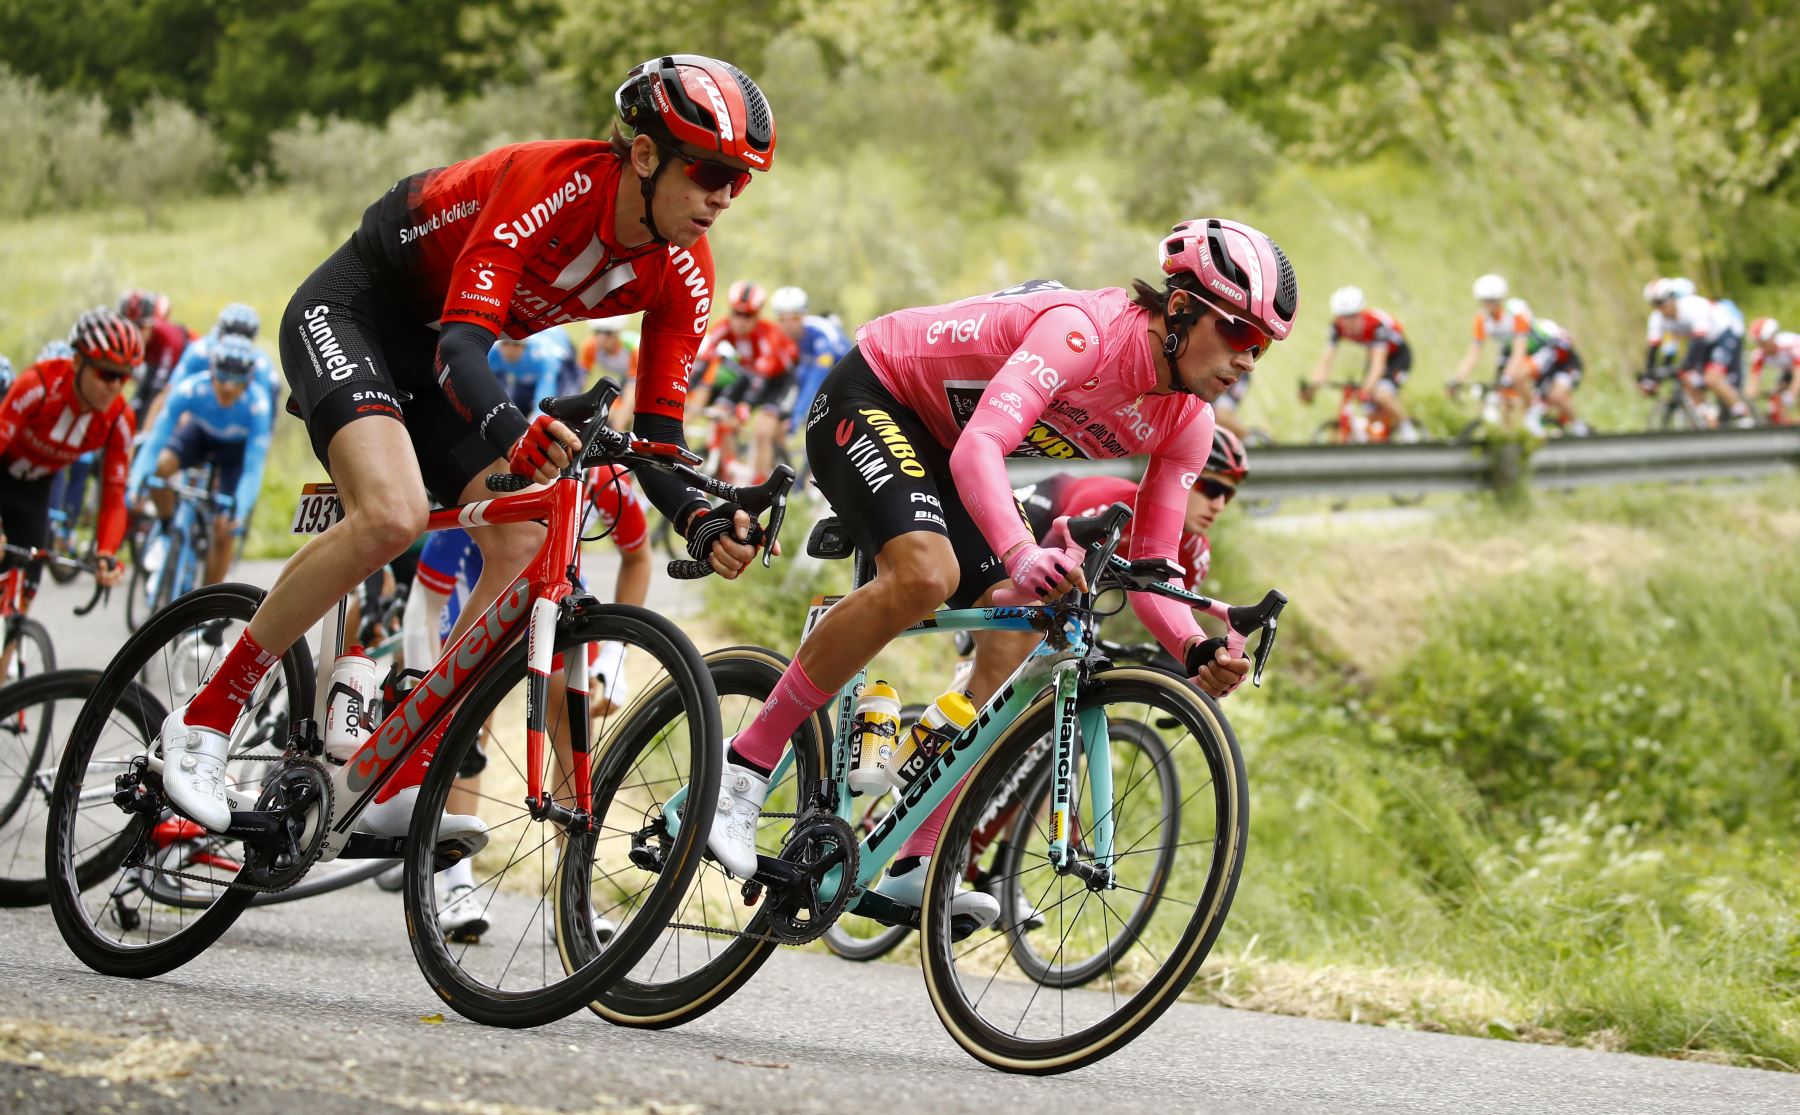 Ciclistas compiten en la cuarta etapa del 102º Giro de Italia - Tour de Italia - carrera de 235 km desde Orbetello hasta Frascati. Foto: AFP